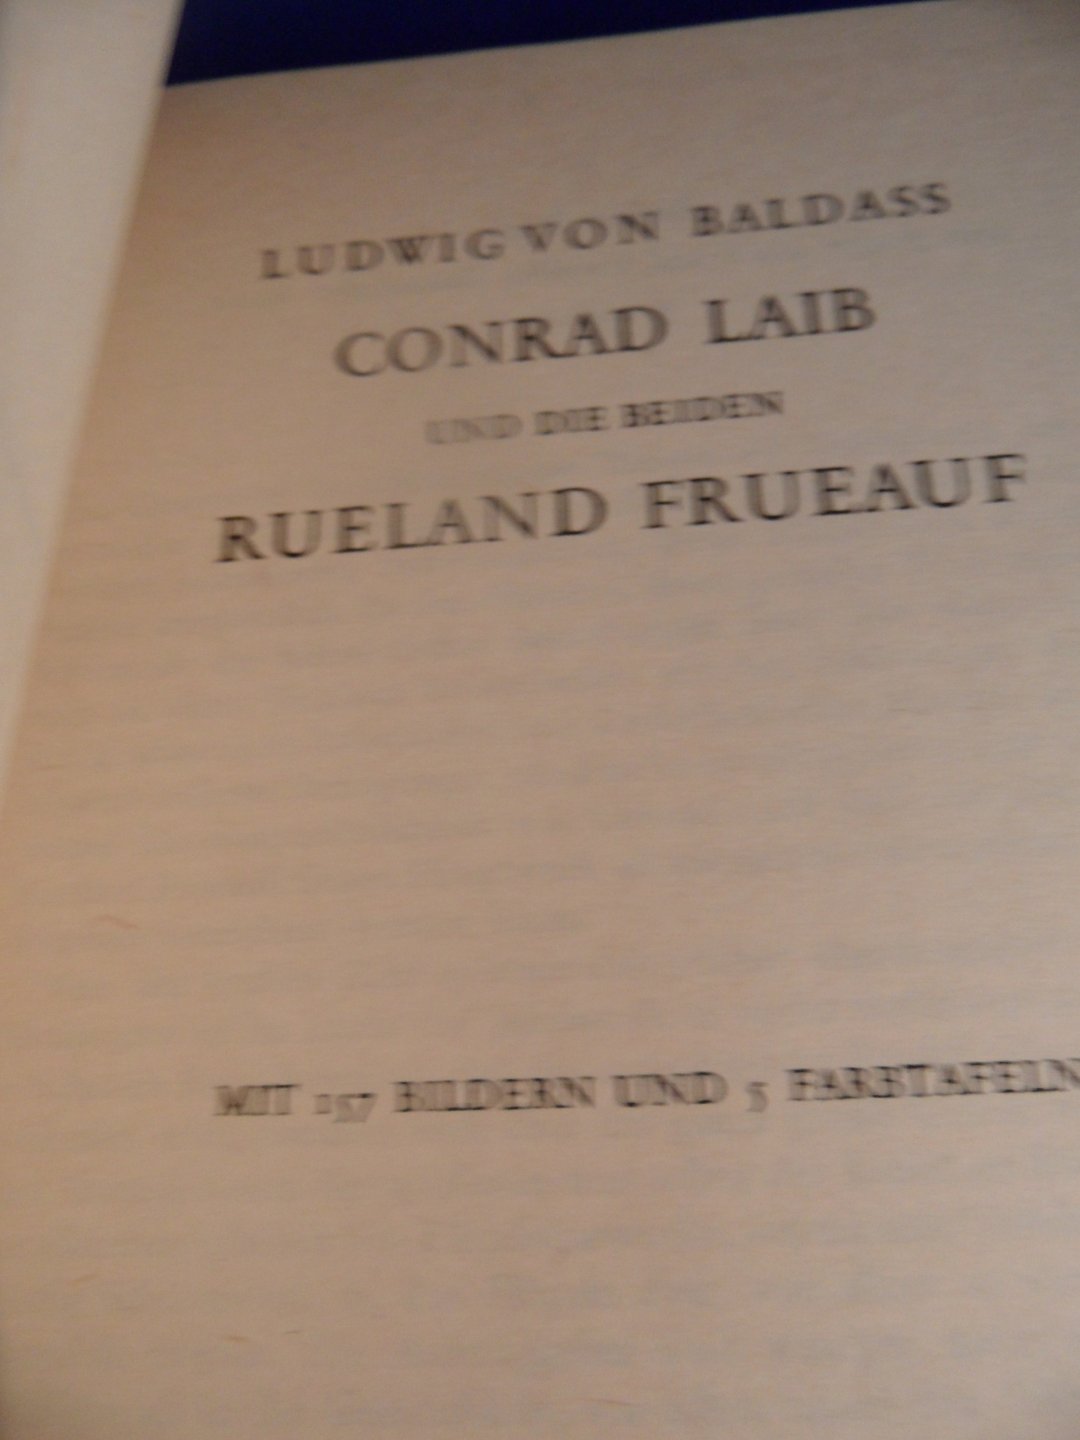 Baldass, Ludwig von - Conrad Laib und die beiden Rueland Frueauf. 157 Bilderen und 5 Farbtafeln